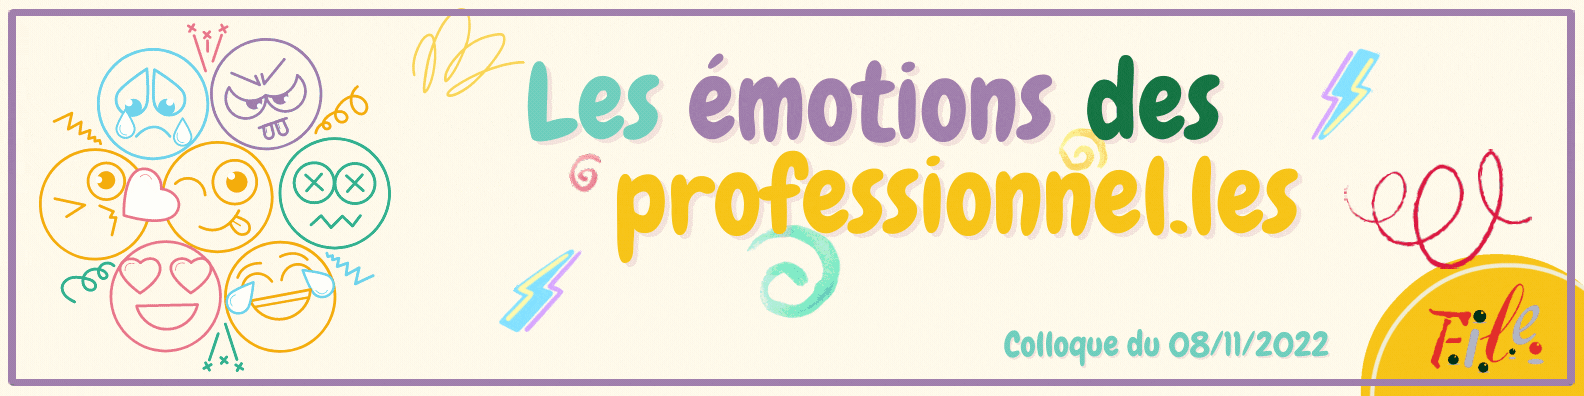 Les émotions des professionnels (2)